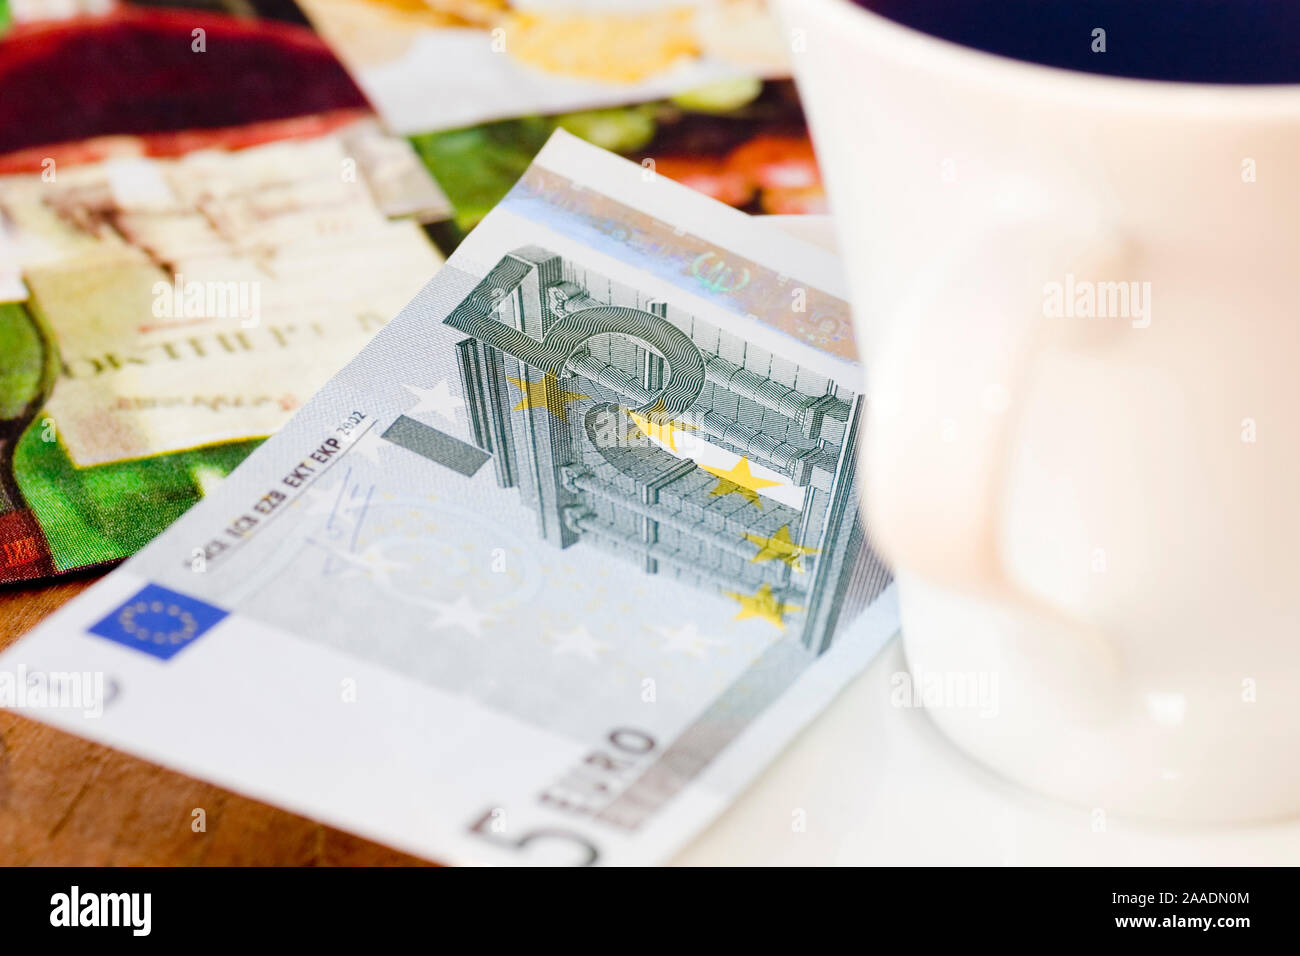 Fünf-Euro-Schein neben Kaffeetasse Foto Stock